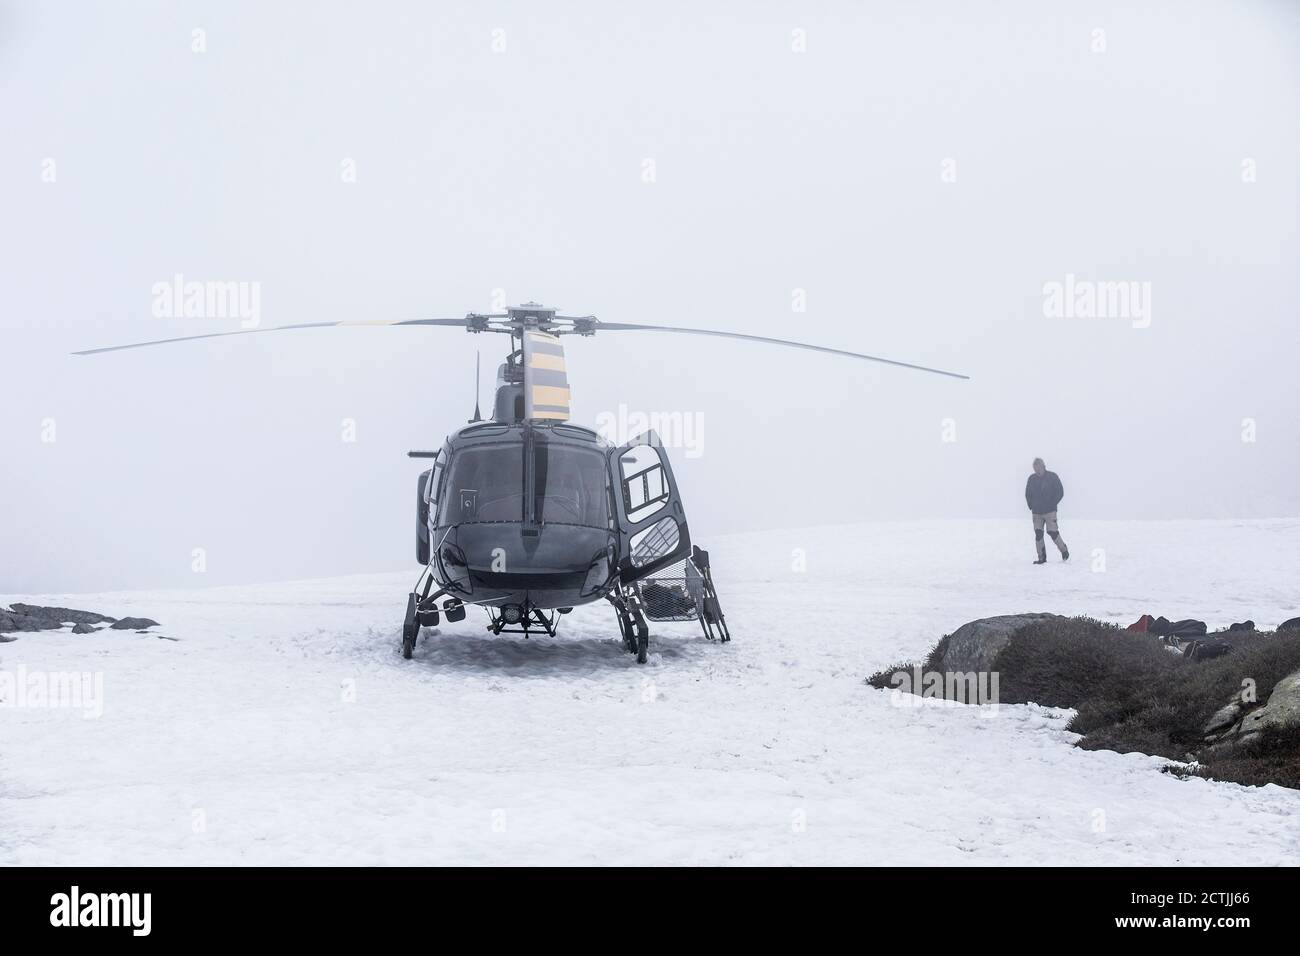 Il pilota dell'elicottero attende una migliore visibilità al variare delle condizioni meteorologiche. Foto Stock